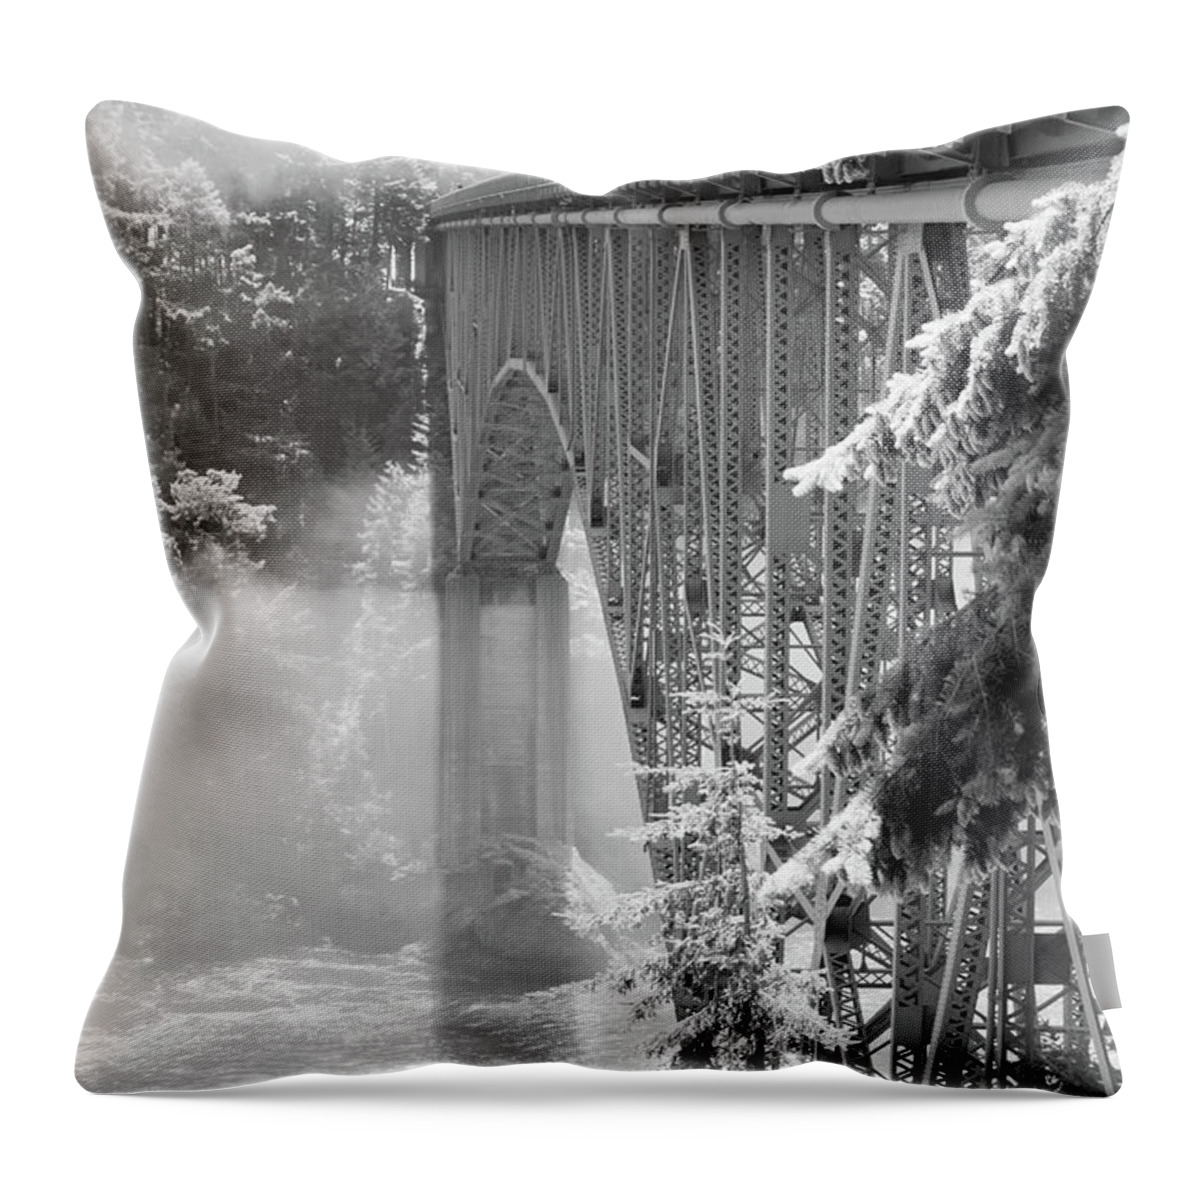 Washington Throw Pillow featuring the photograph Deception Pass Sunlight by Tara Krauss